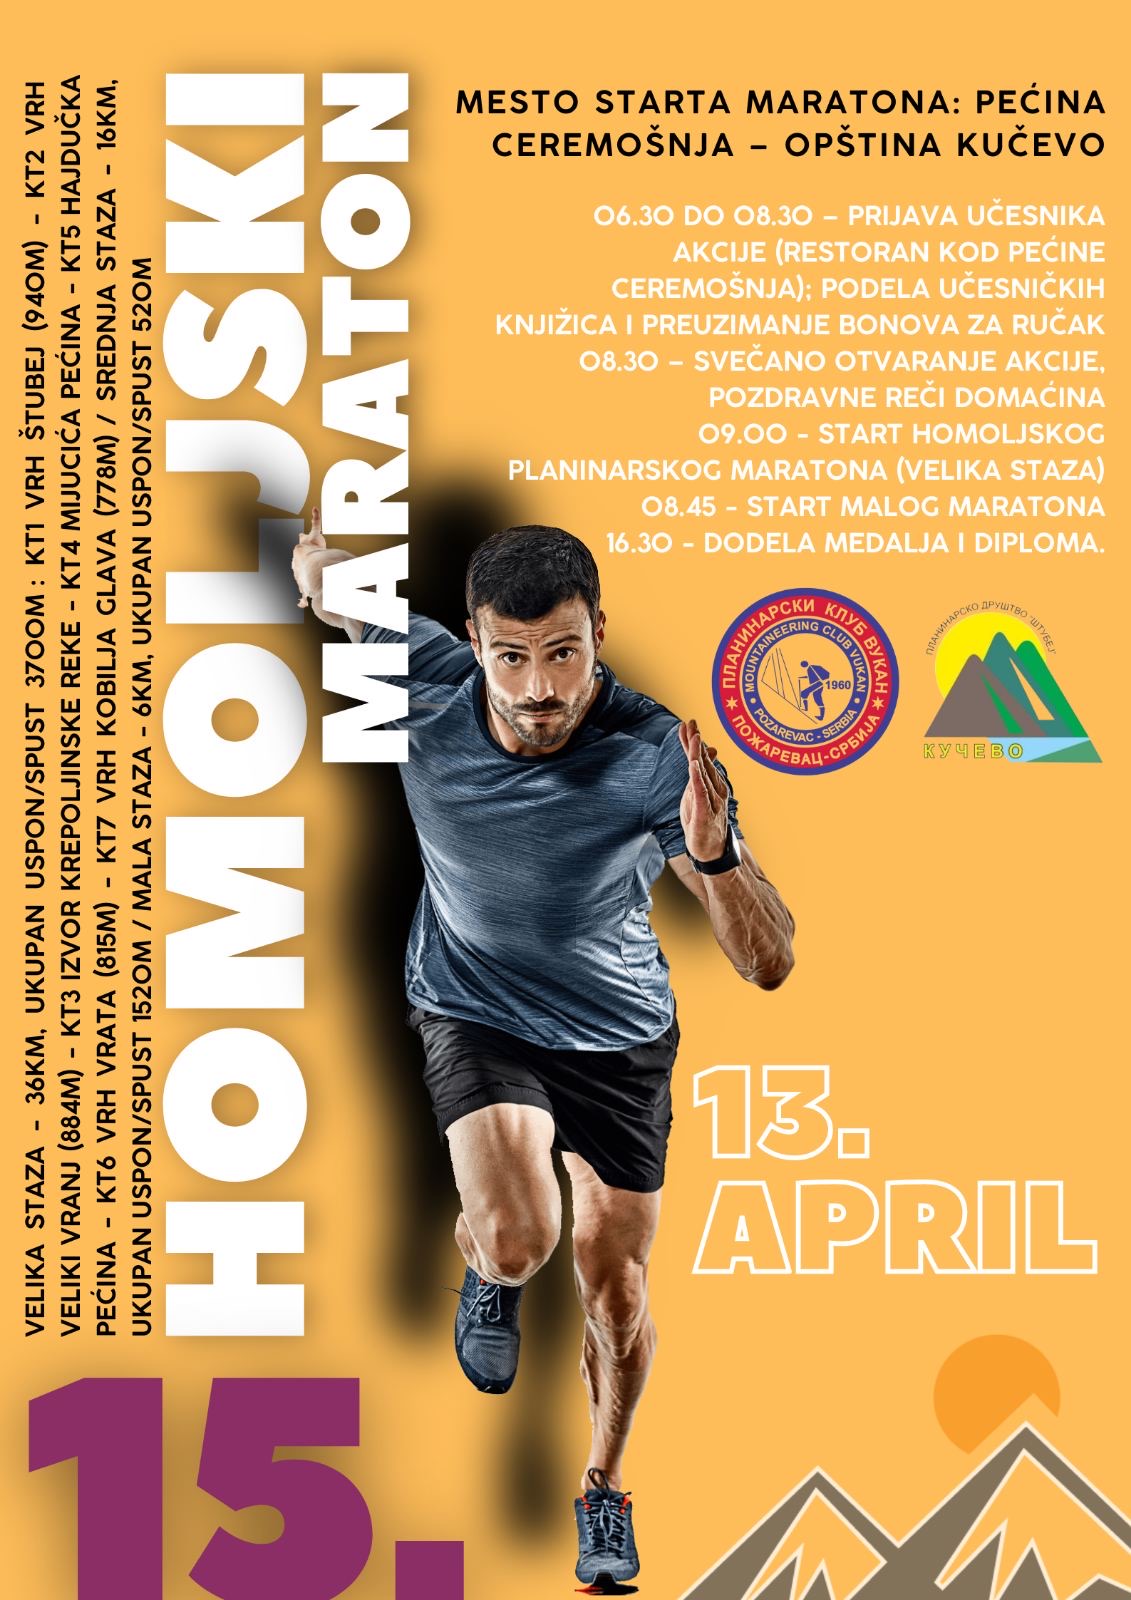 15. Хомољски маратон у суботу 13. априла